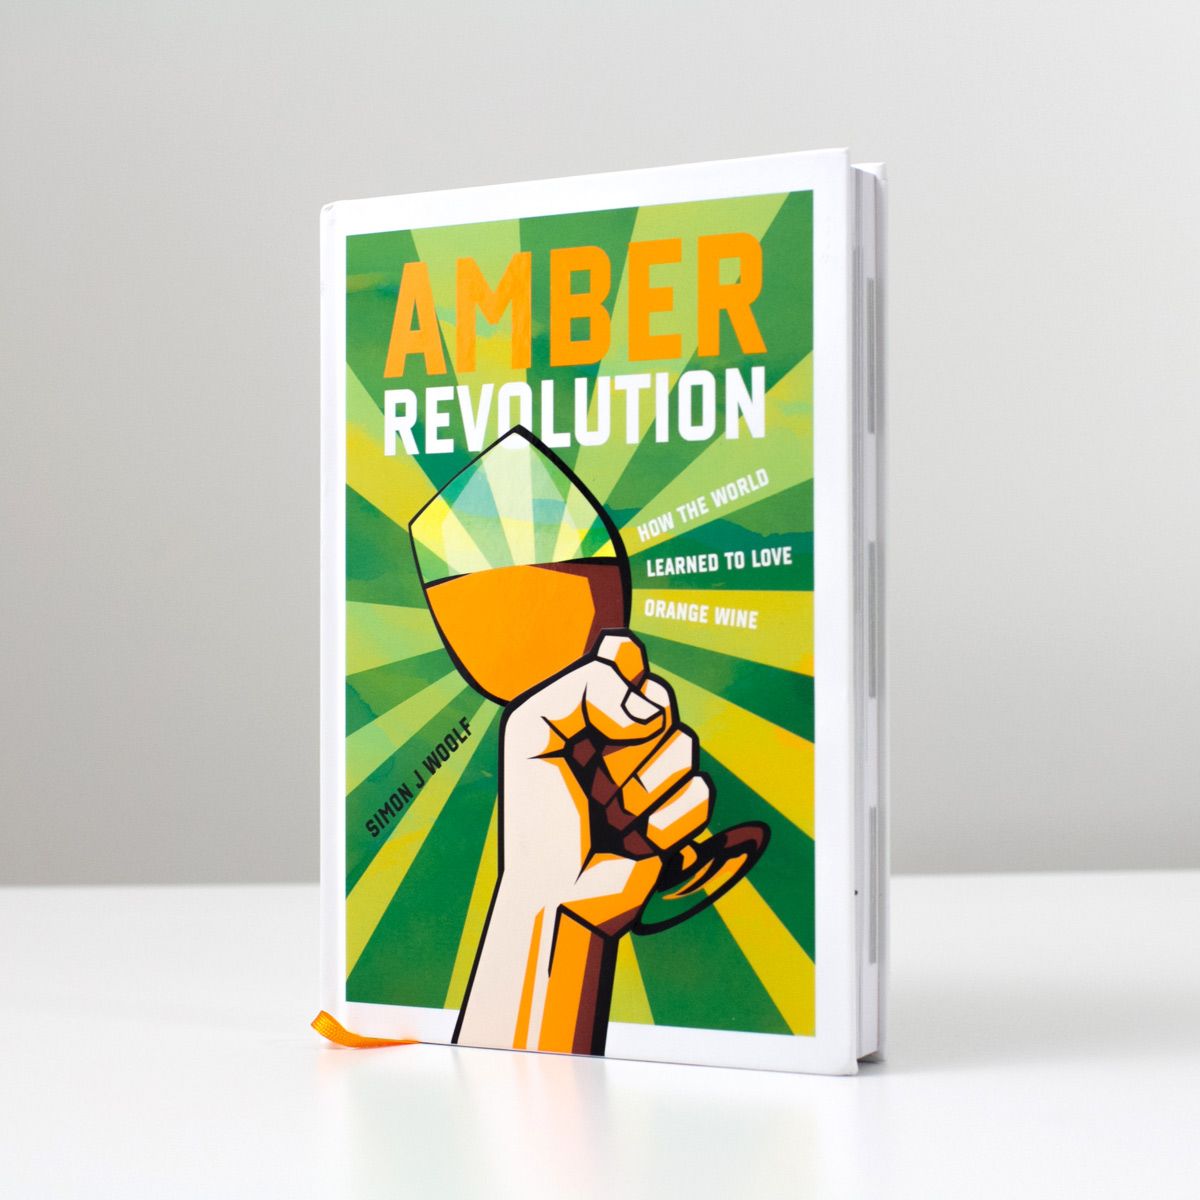 Fotka knihy Amber Revolution od Simona Woolfa - foto Wine Folly